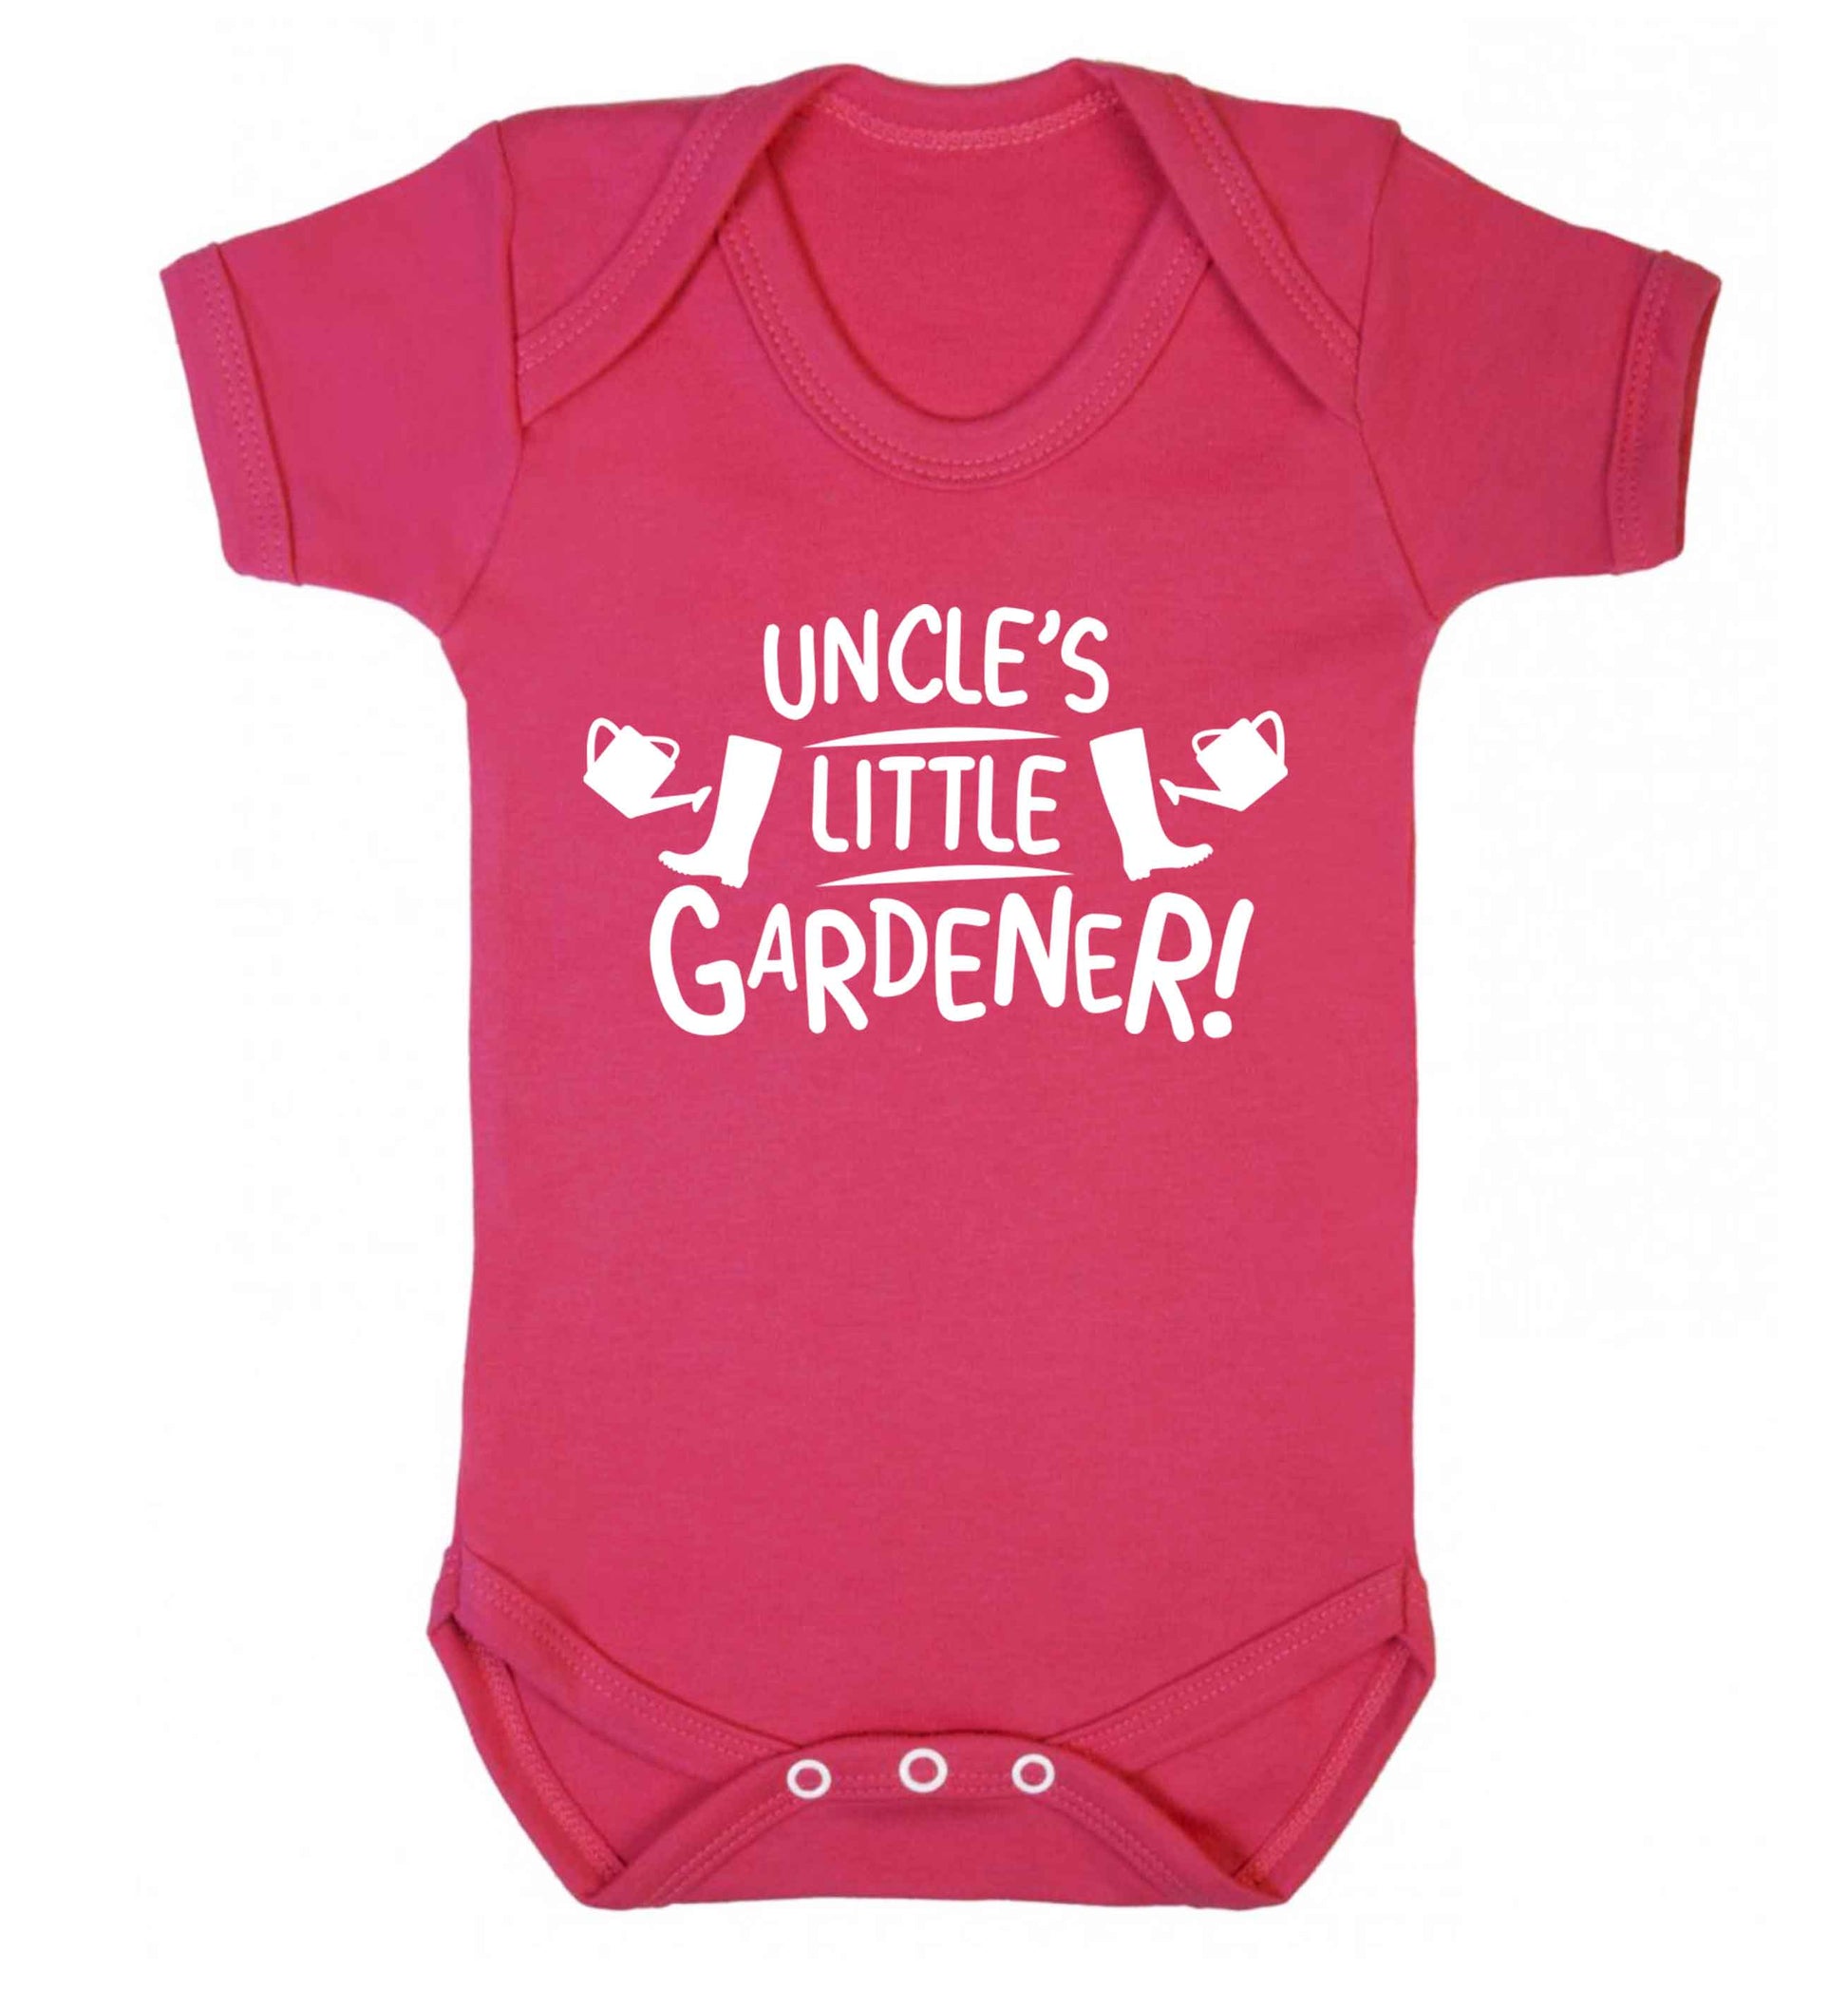 Uncle's little gardener Baby Vest dark pink 18-24 months